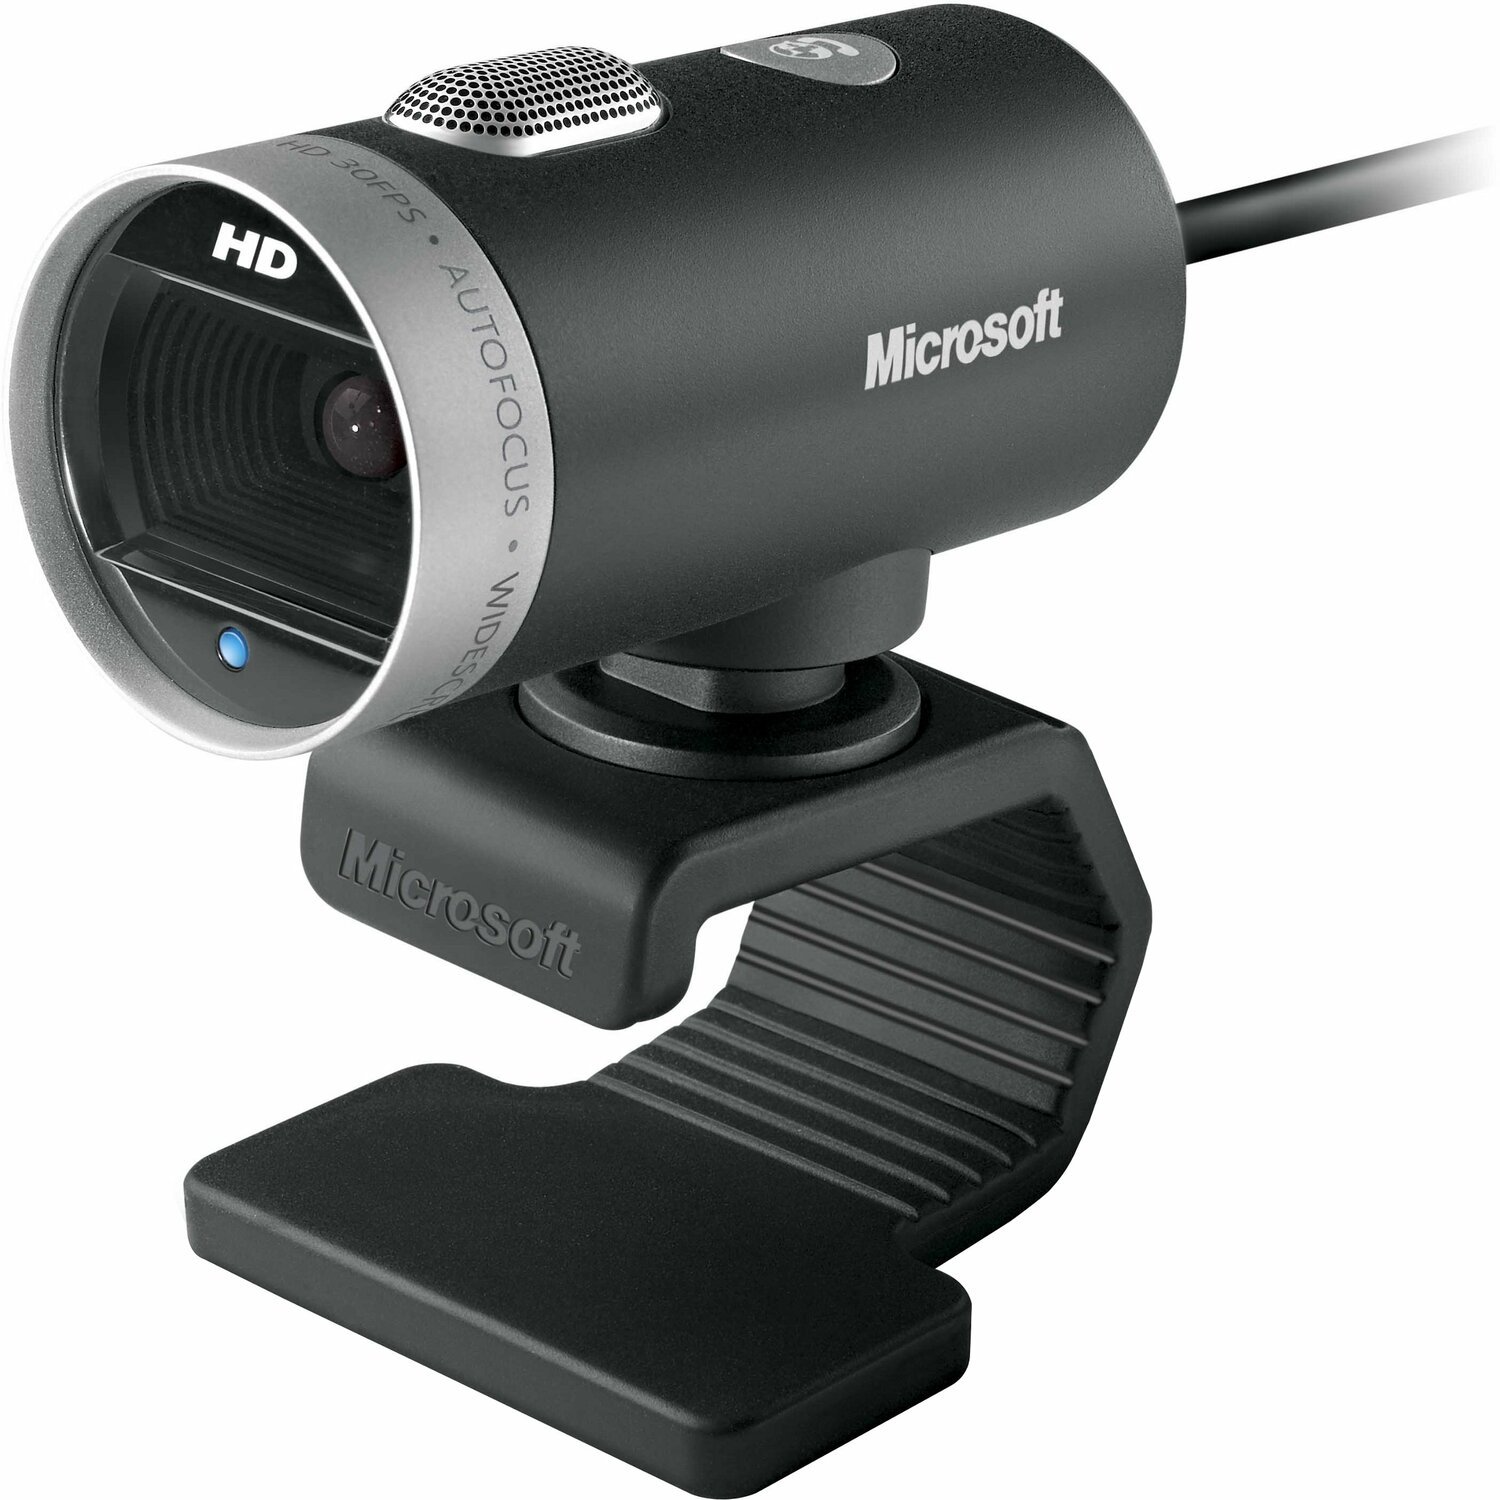 Caméra Web Microsoft Lifecam Cinema 720p